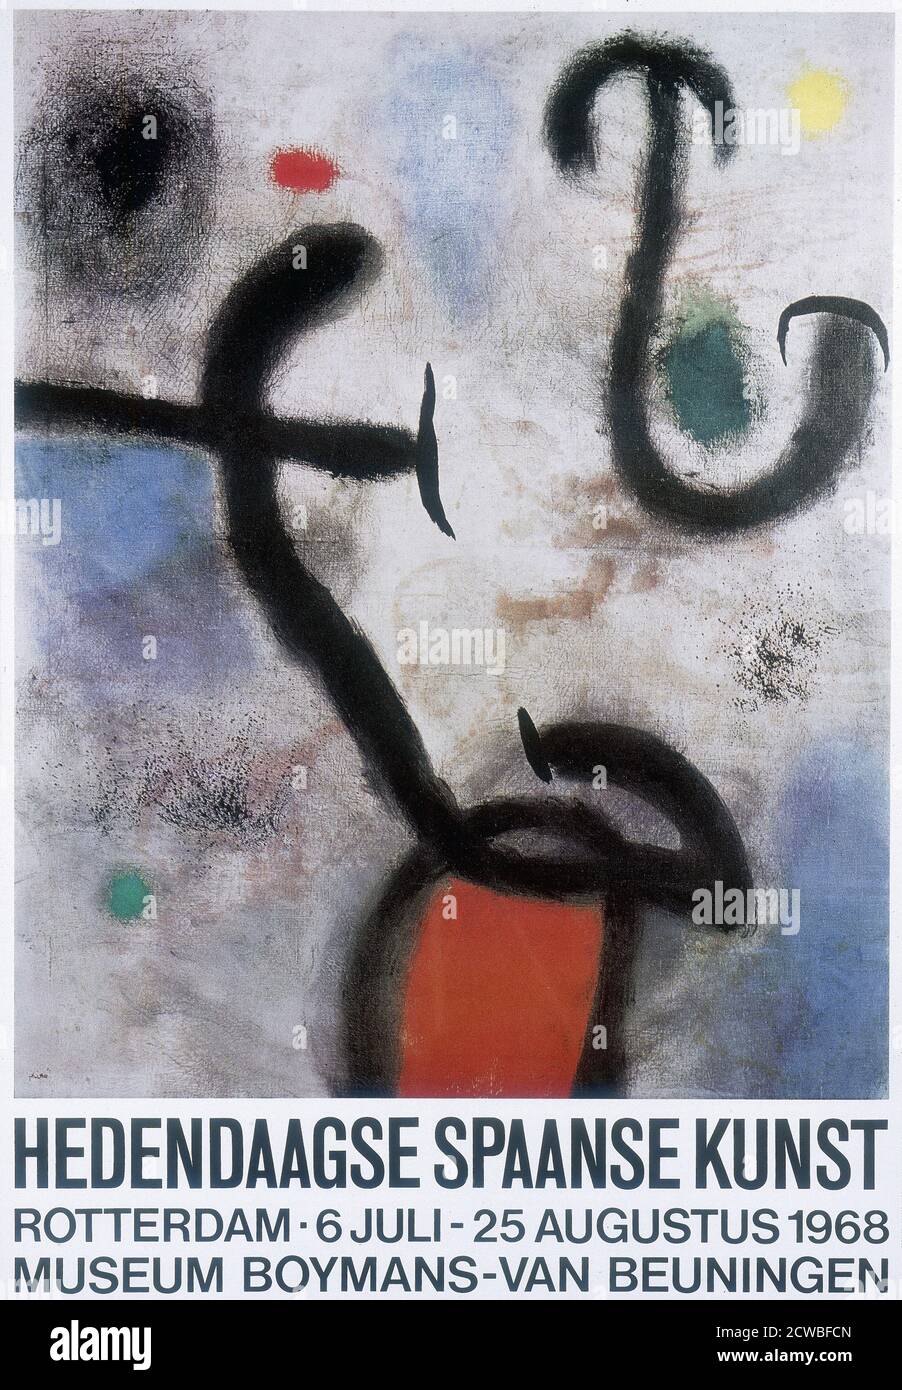 Manifesto per una mostra d'arte spagnola a Rotterdam 1968. Litografia in stile surrealista dell'artista spagnolo Joan Miro.(1893 - 1983) pittore, scultore e ceramista nato a Barcellona. Foto Stock